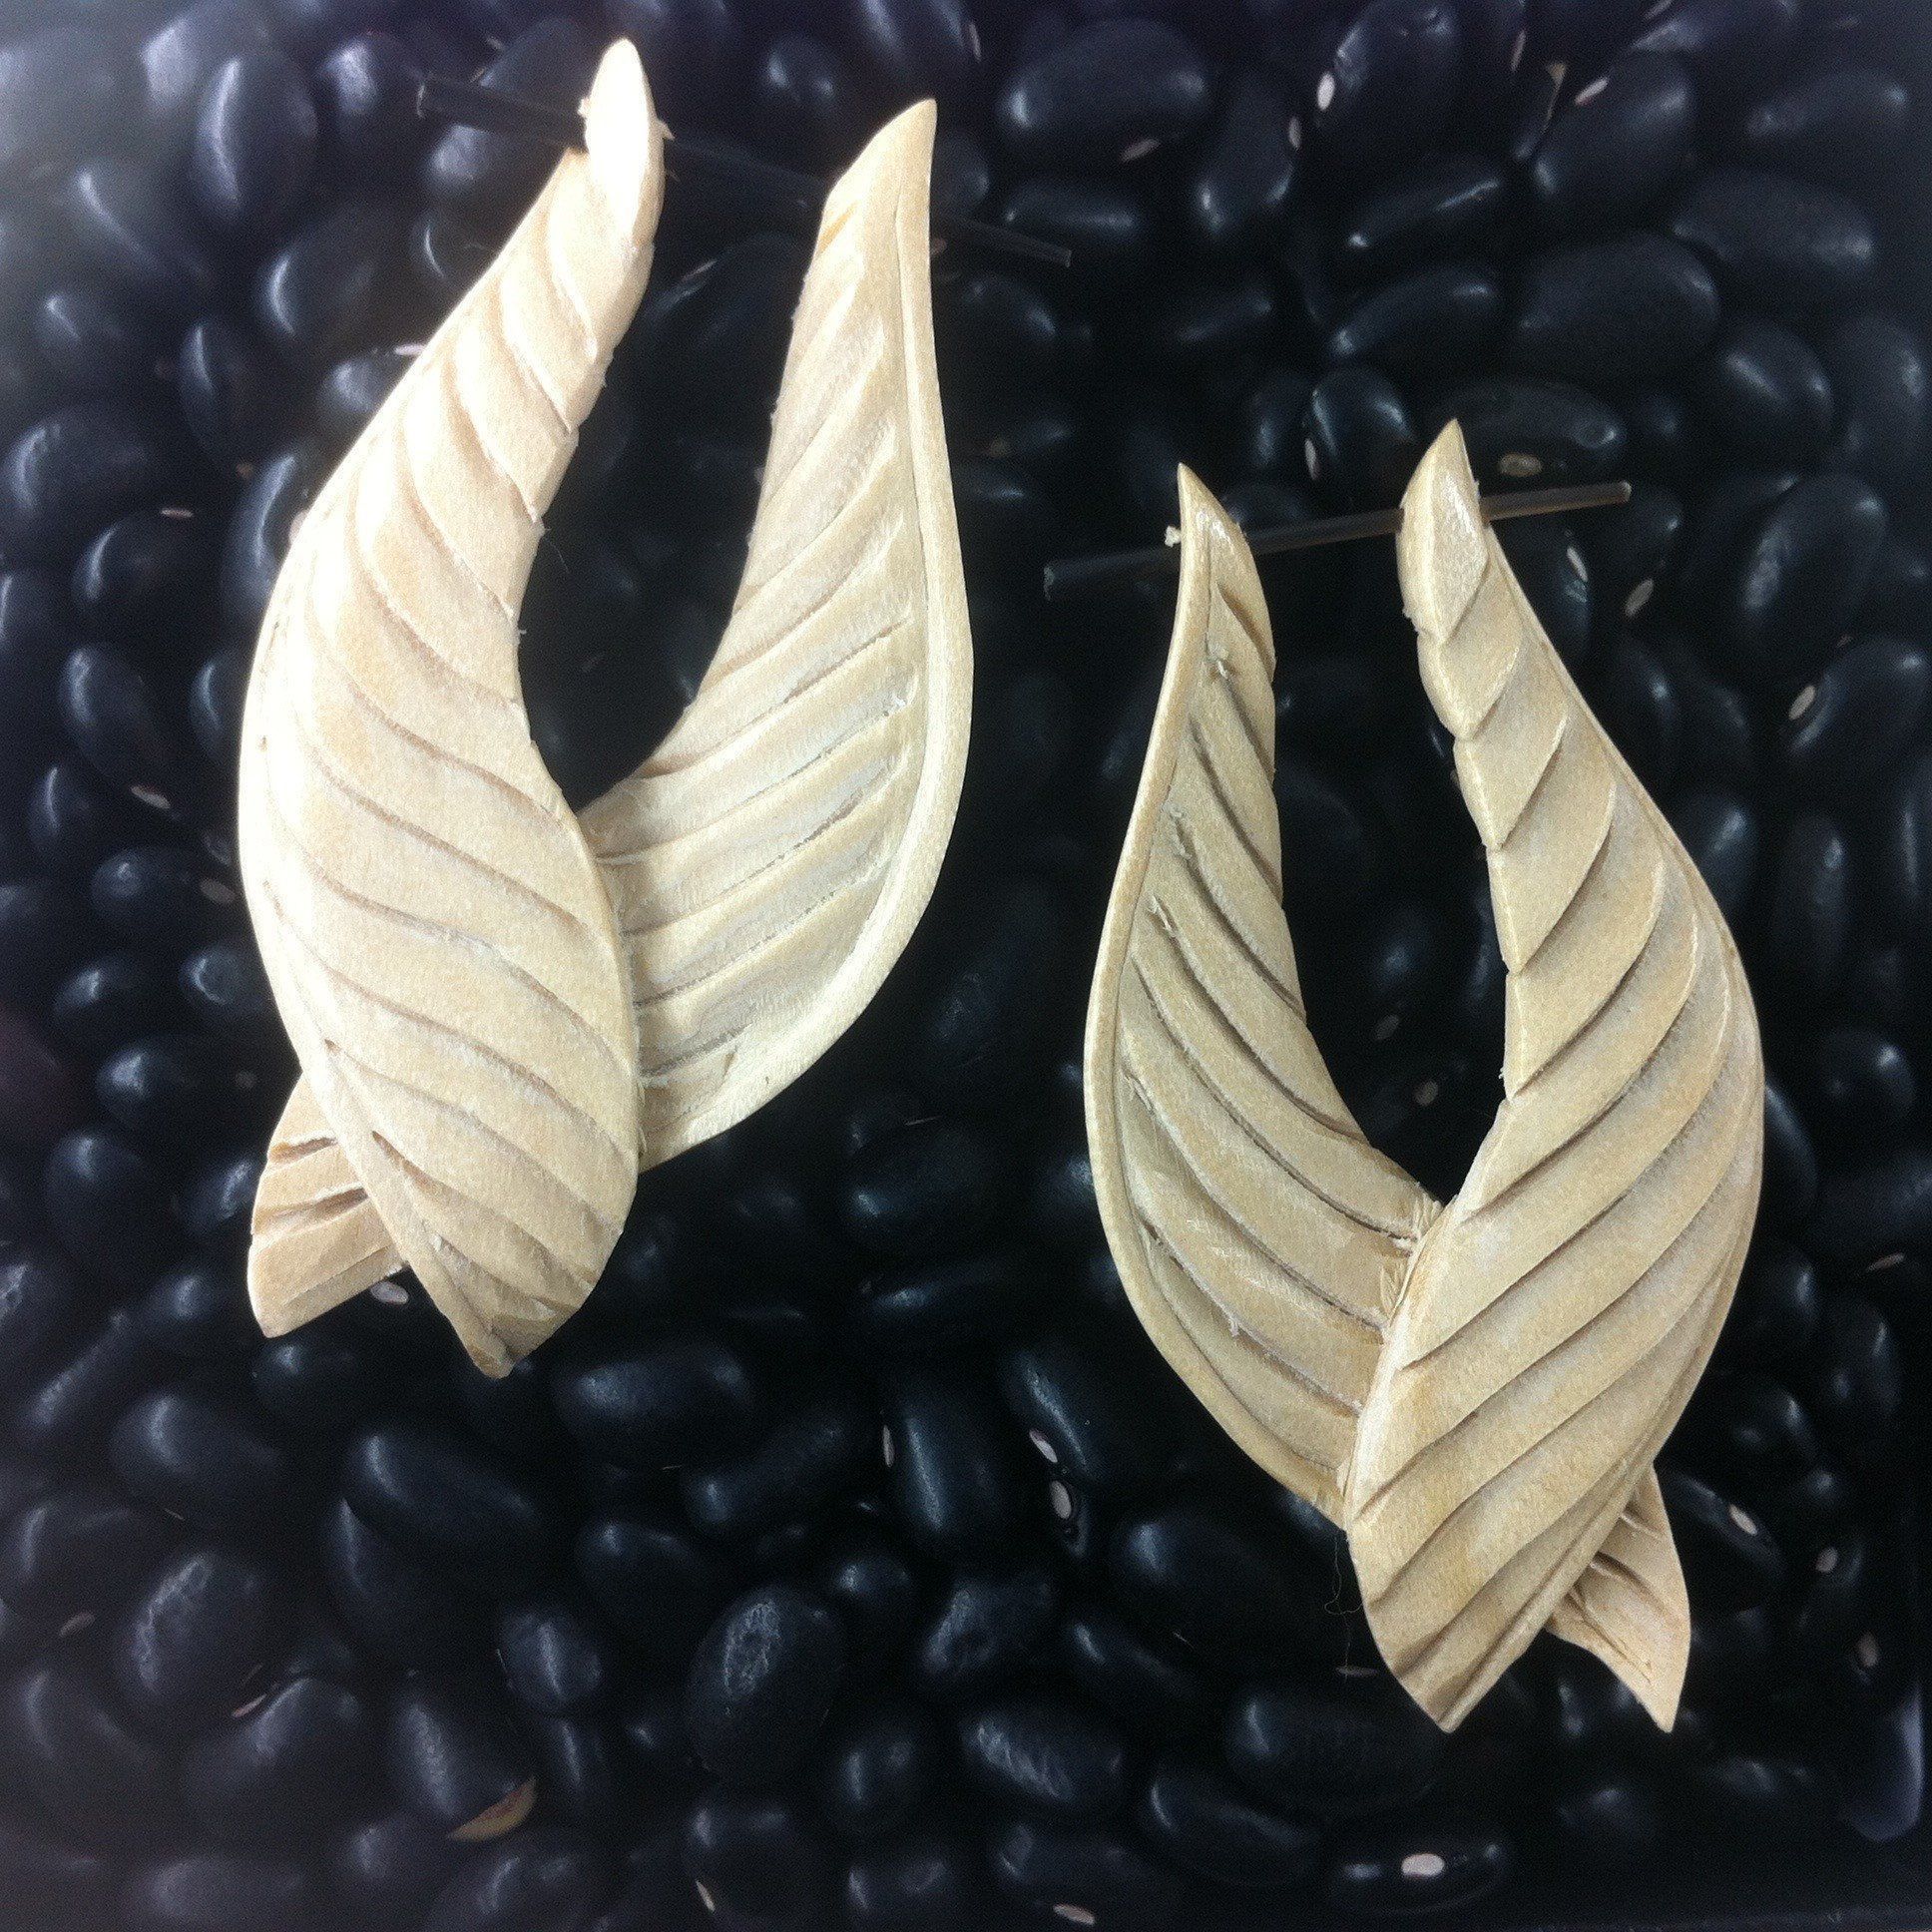 Wood Earrings :|: Feathered Twist. Light Wood Earrings, 1 1/4 inch W x 2 inch L. | Wood Earrings